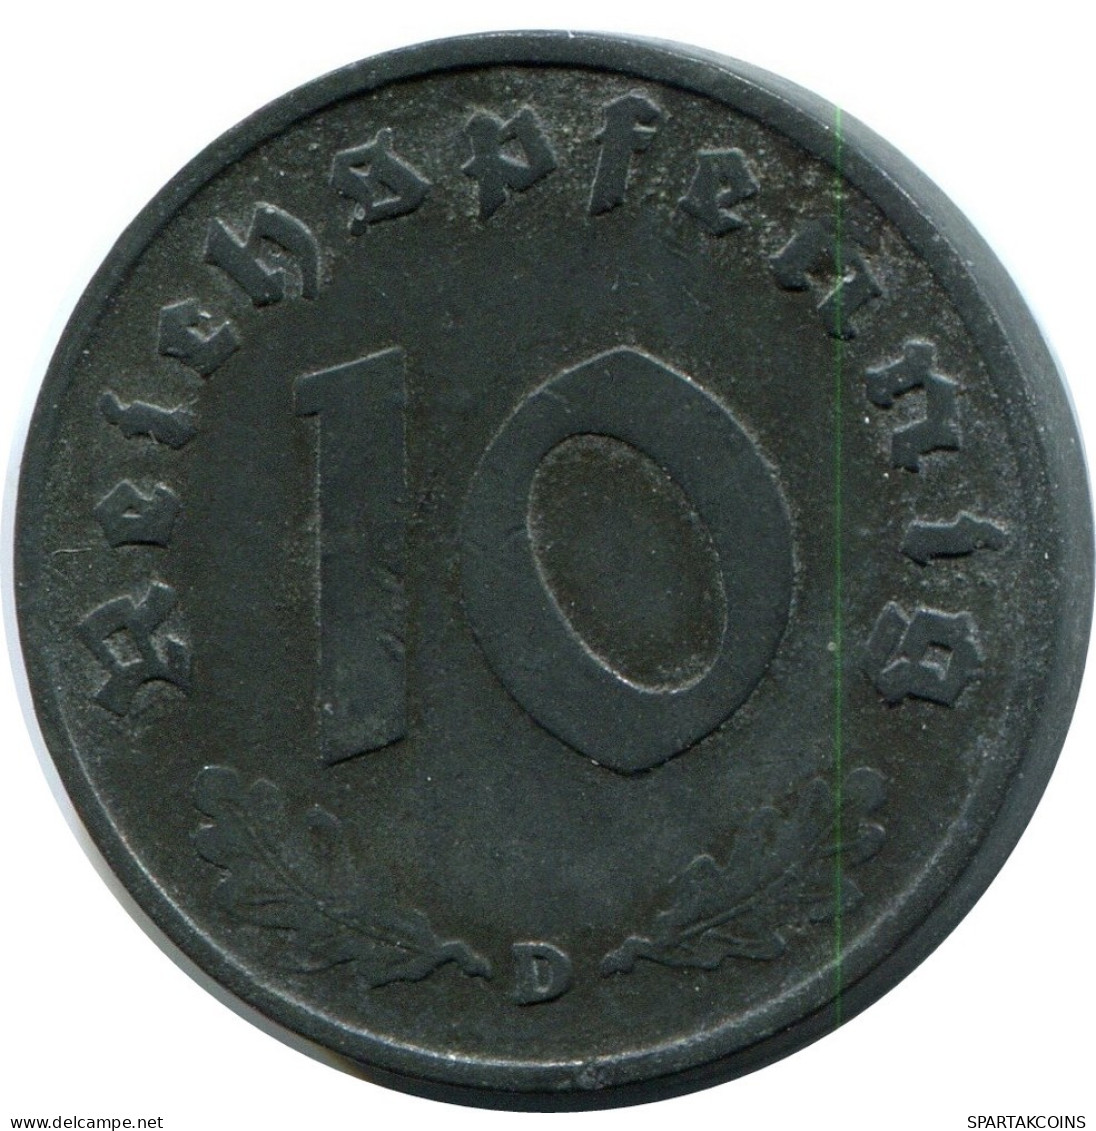 10 REICHSPFENNIG 1941 D GERMANY Coin #AX567.U.A - 10 Reichspfennig